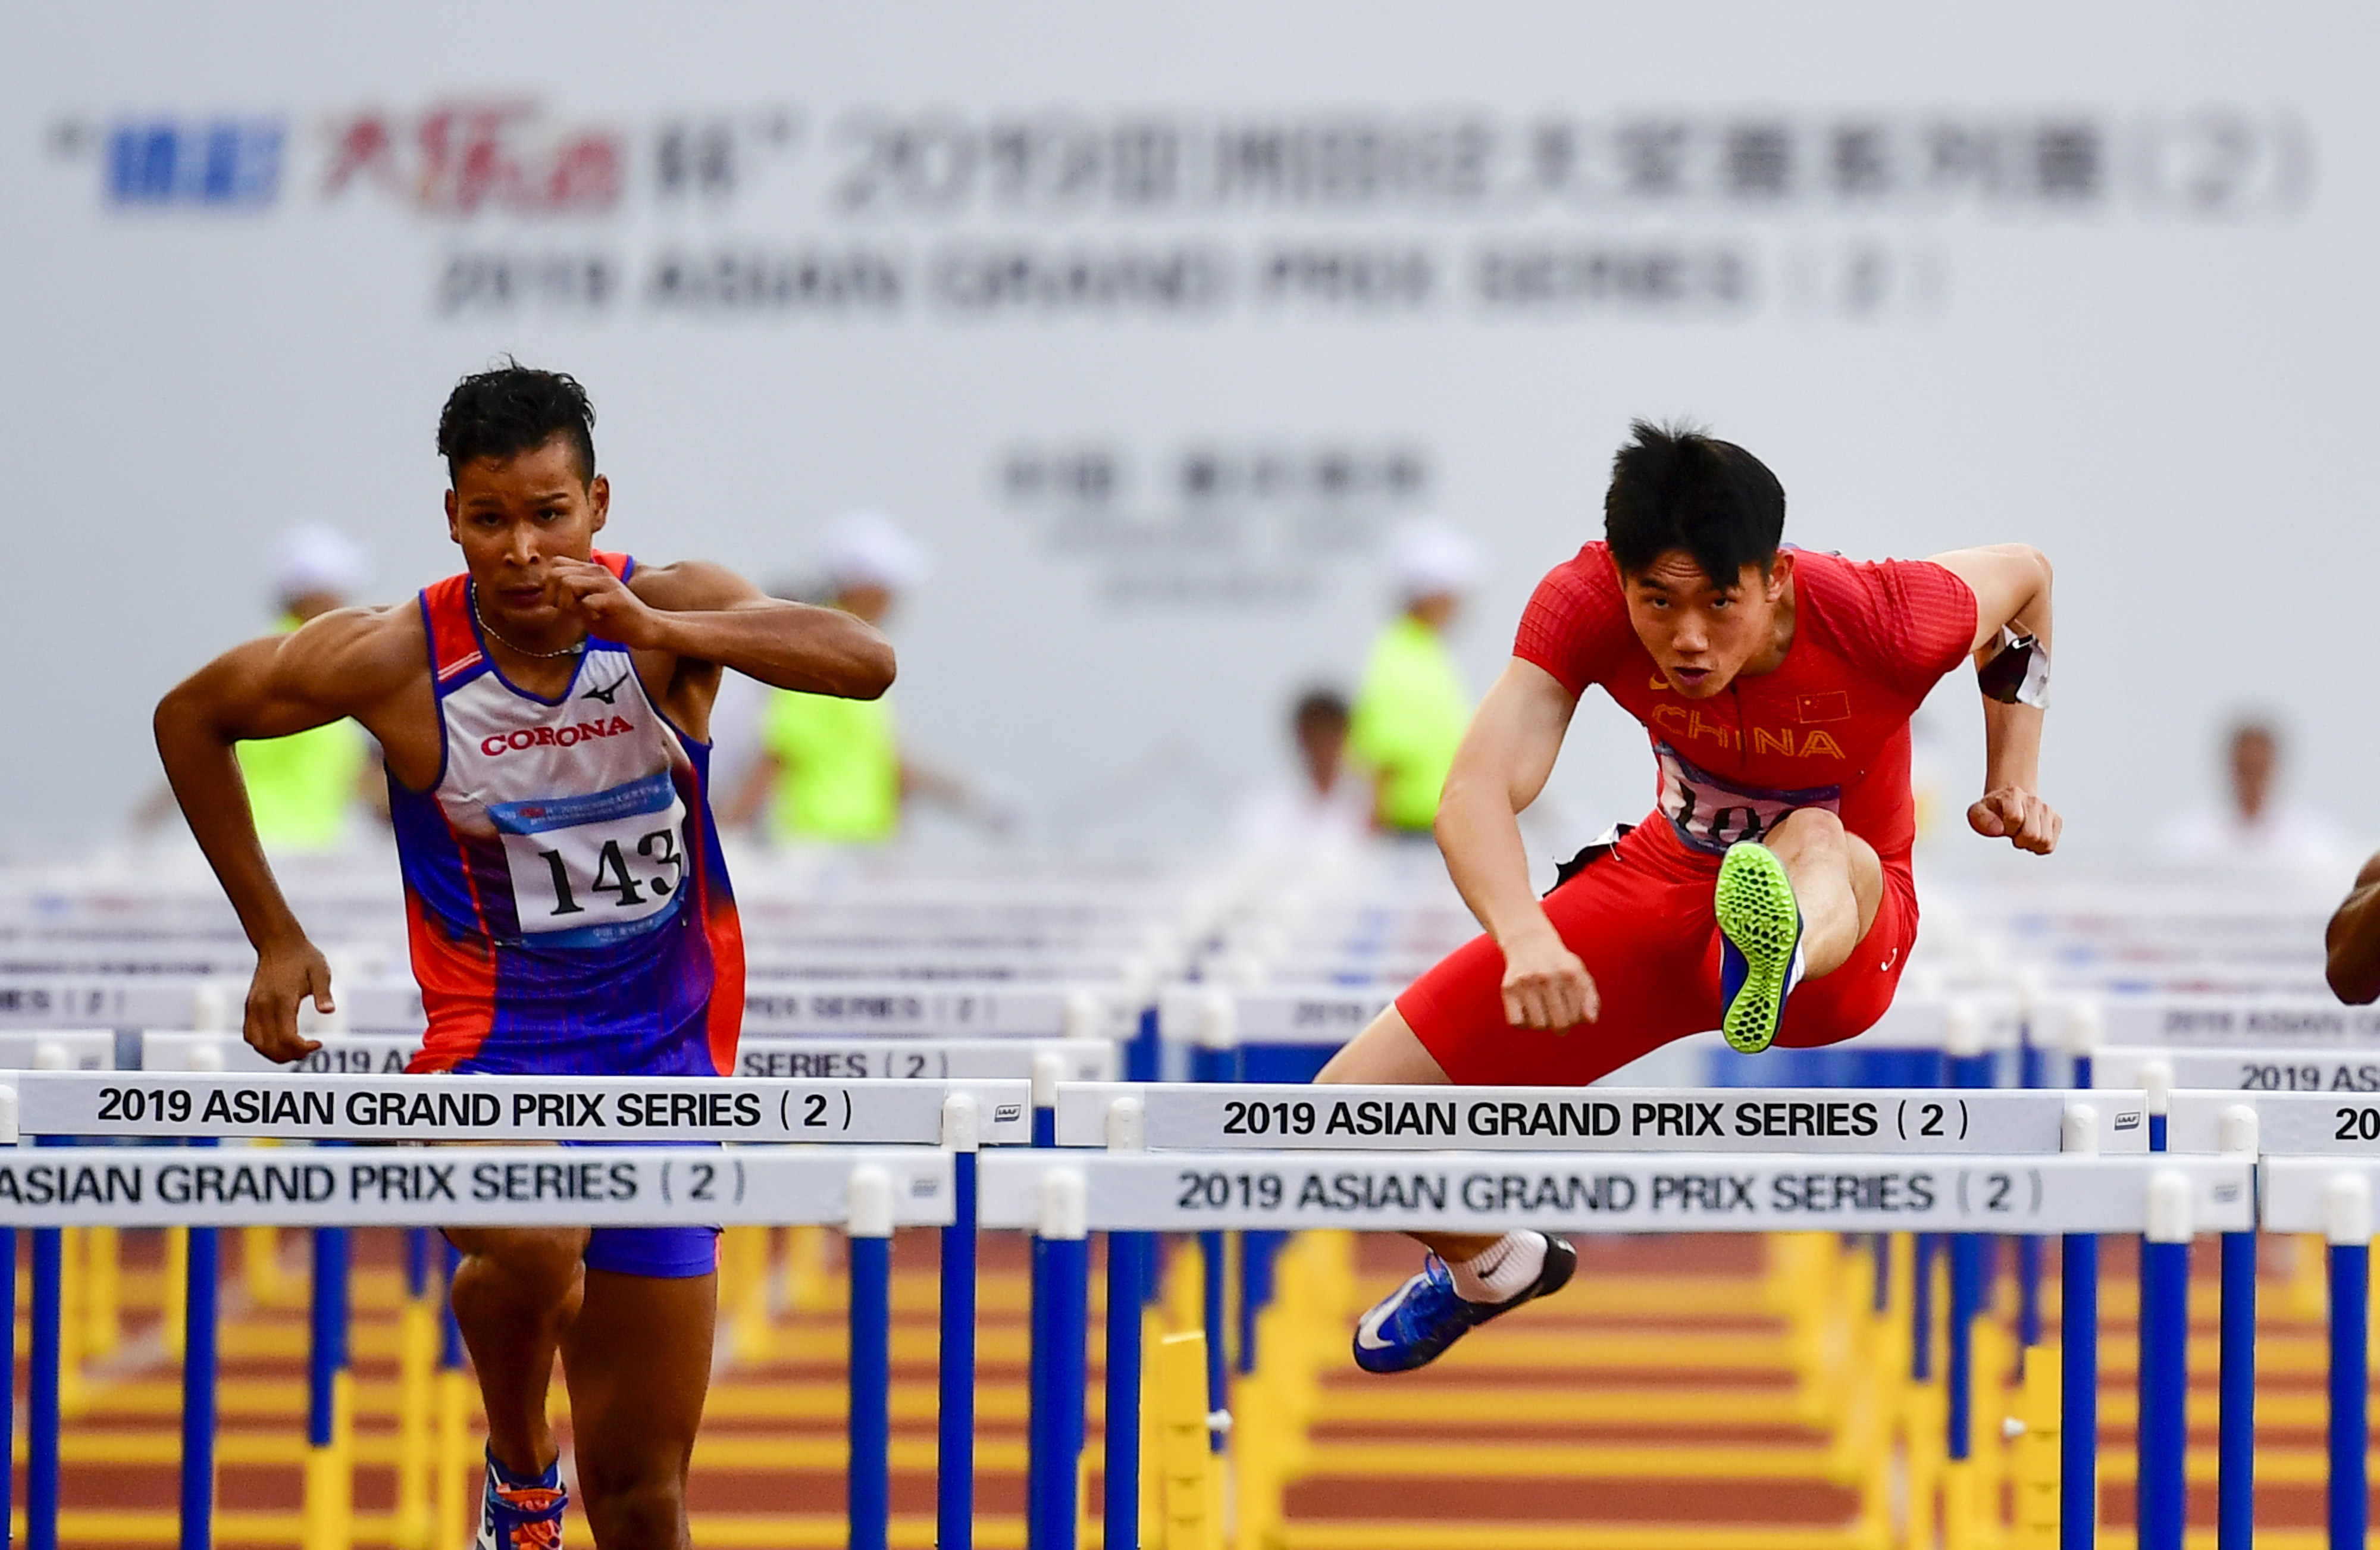 田径——亚洲大奖赛:男子110米栏赛况